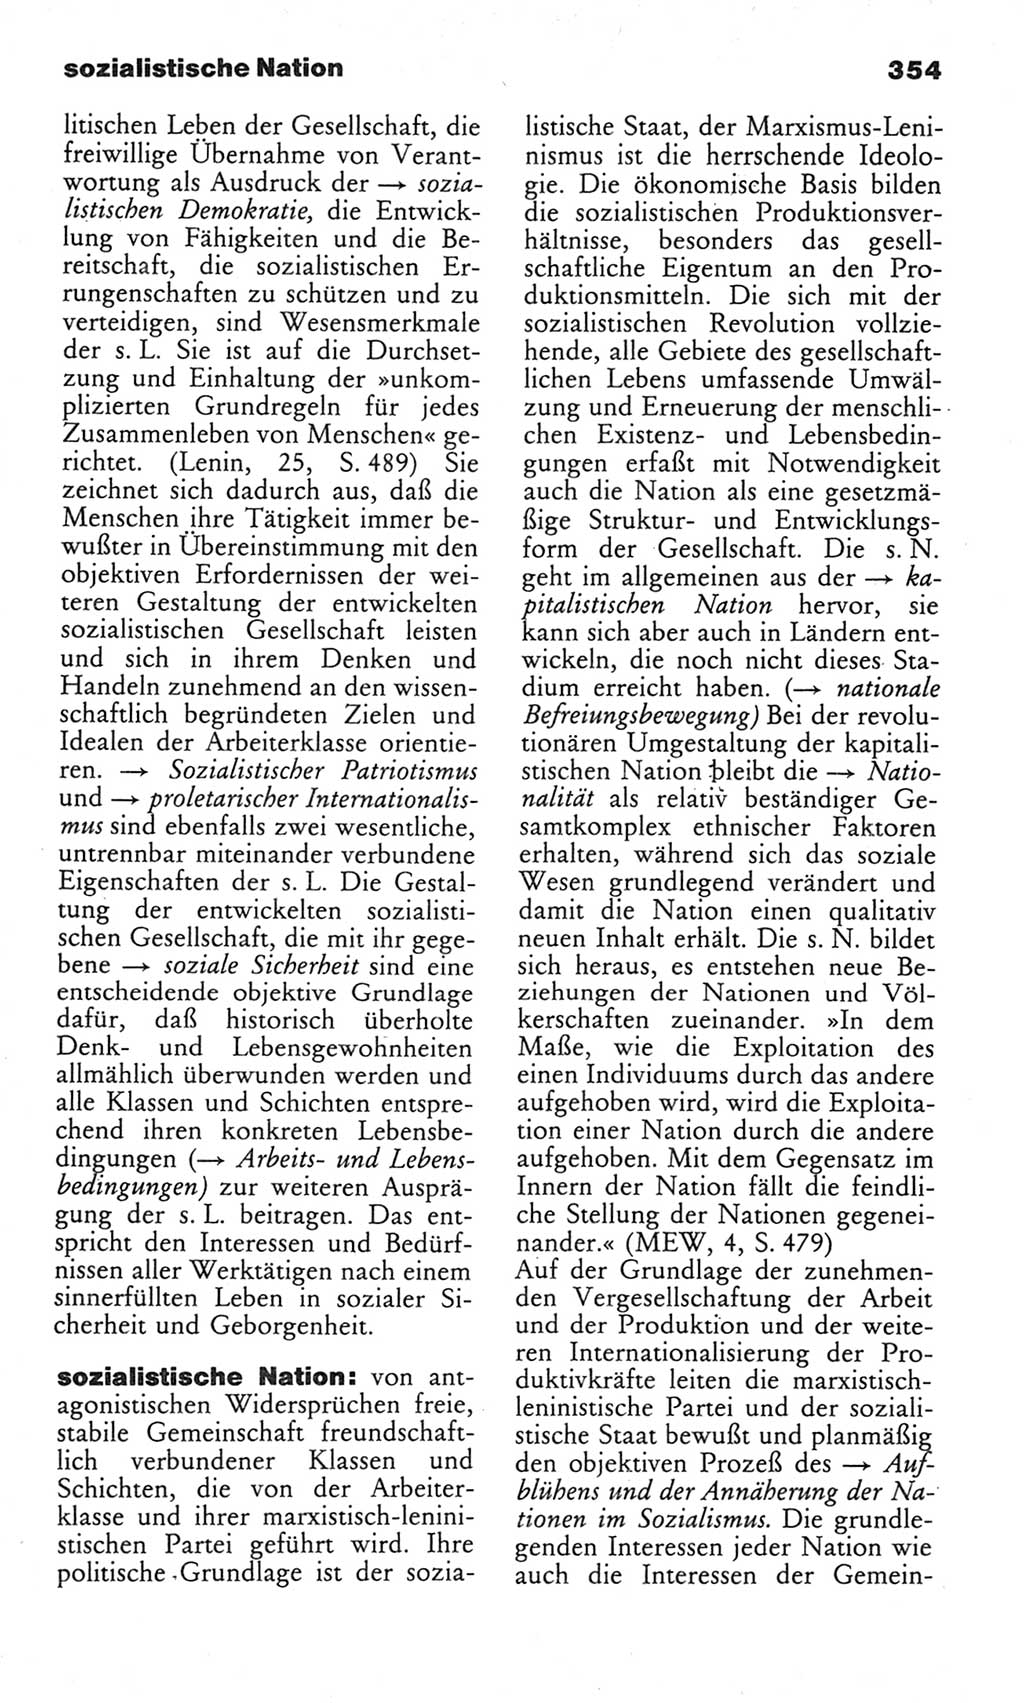 Wörterbuch des wissenschaftlichen Kommunismus [Deutsche Demokratische Republik (DDR)] 1982, Seite 354 (Wb. wiss. Komm. DDR 1982, S. 354)